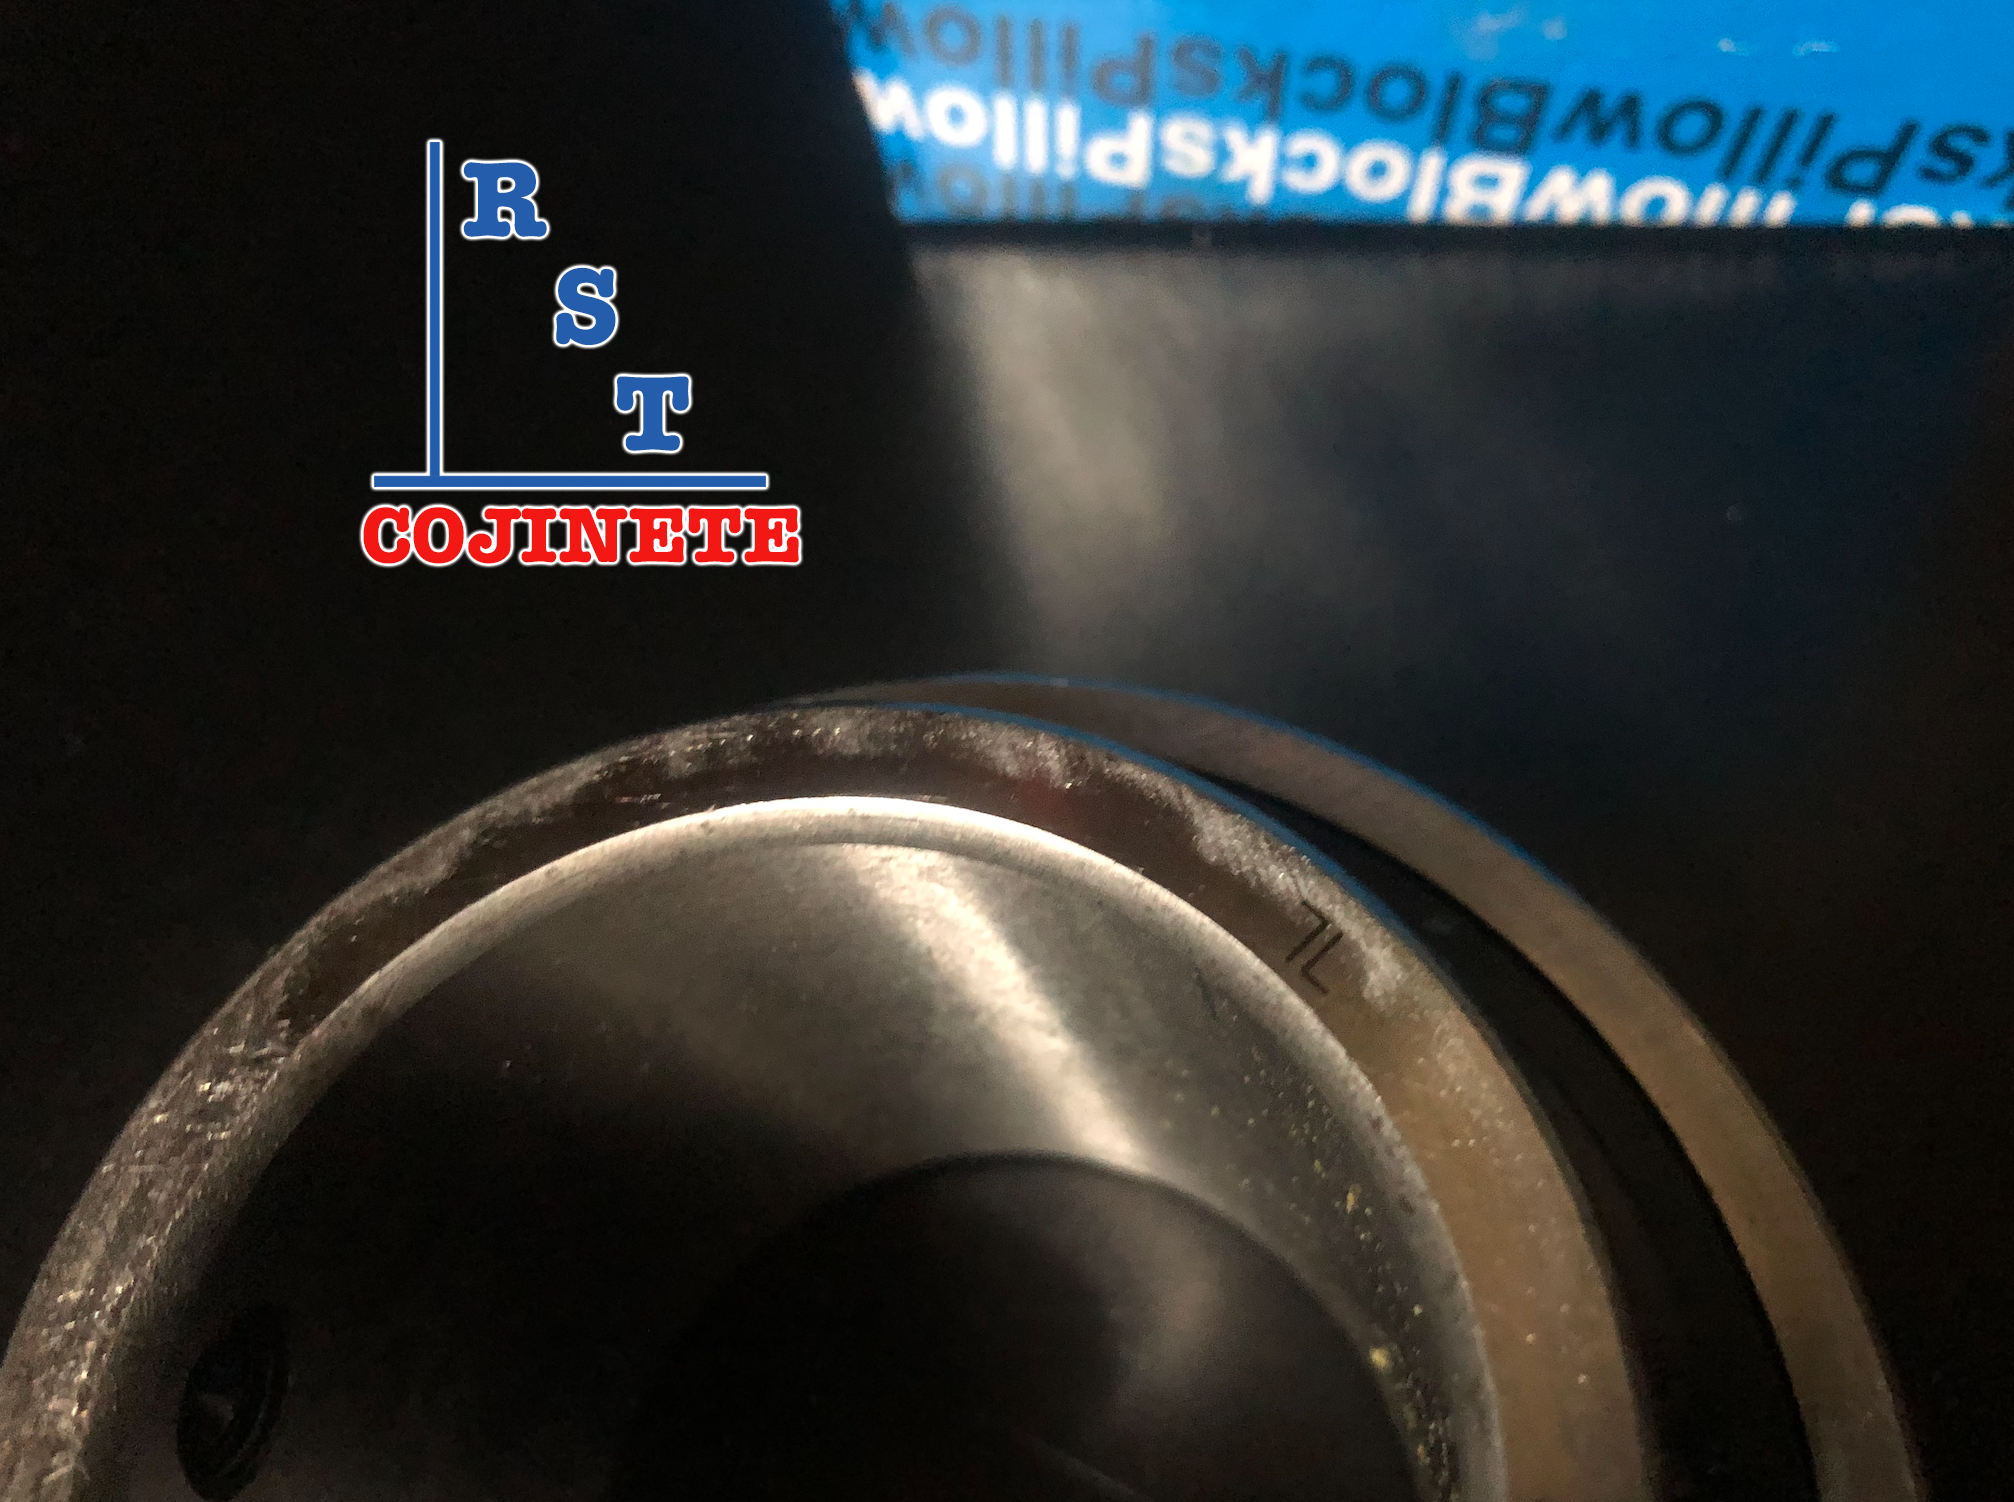 Cojinete insertable UC218-56 | Rodamiento para eje de 3-½" rígido de bolas con sello de hule para chumacera